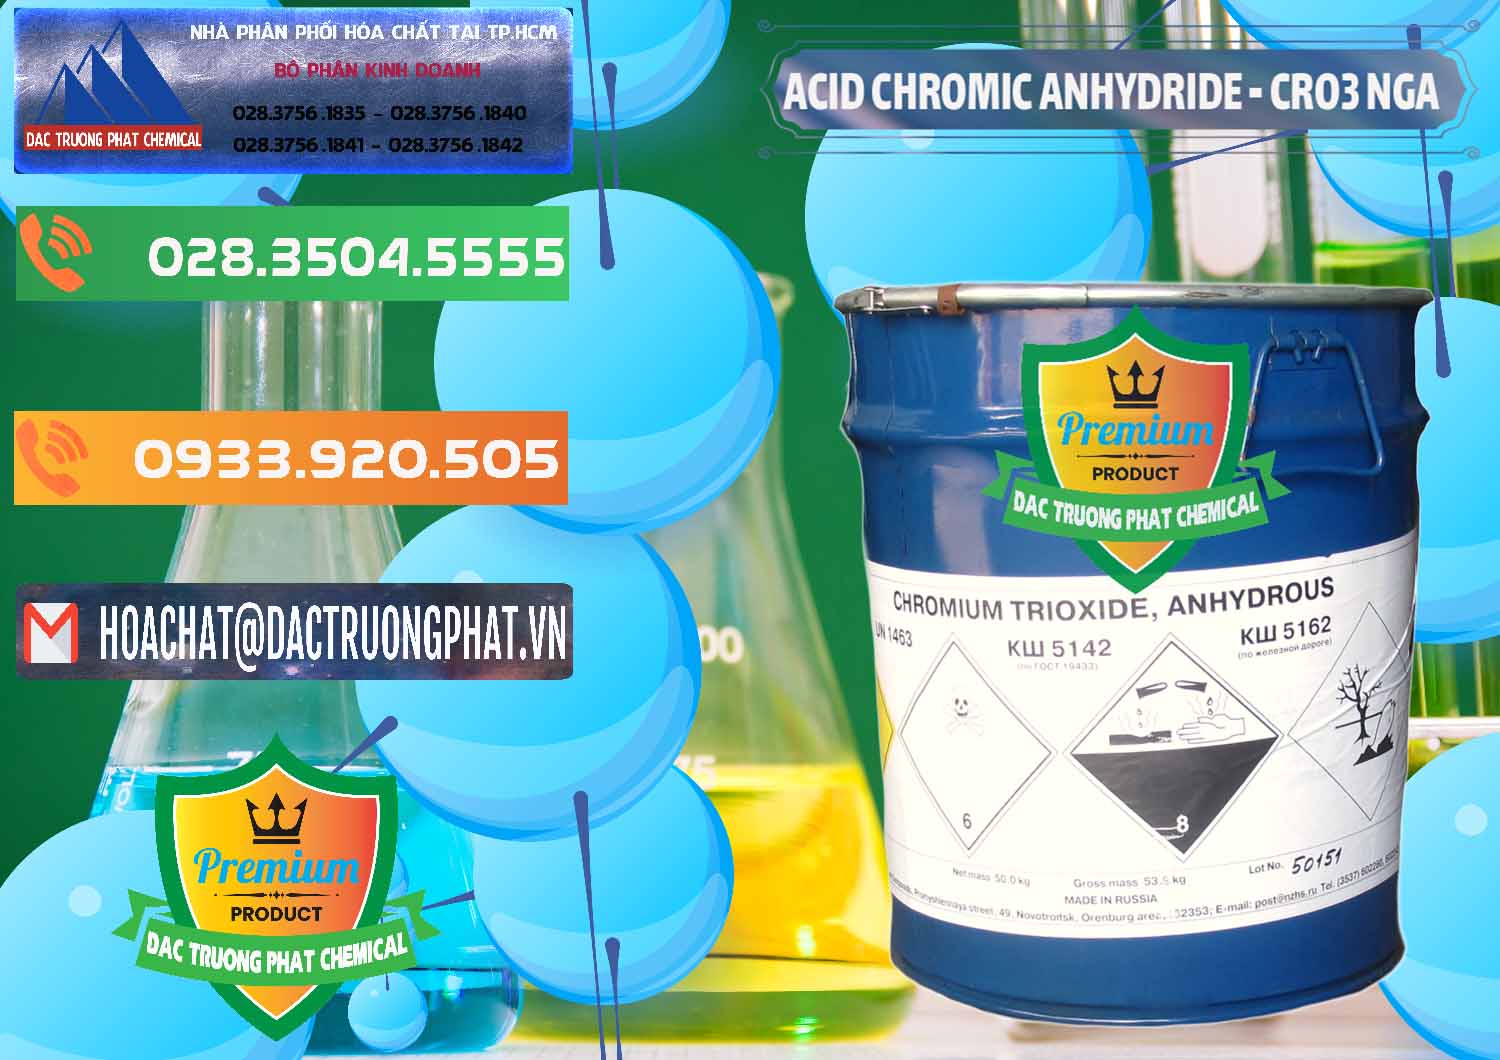 Công ty chuyên bán ( phân phối ) Acid Chromic Anhydride - Cromic CRO3 Nga Russia - 0006 - Cty phân phối - kinh doanh hóa chất tại TP.HCM - hoachatxulynuoc.com.vn